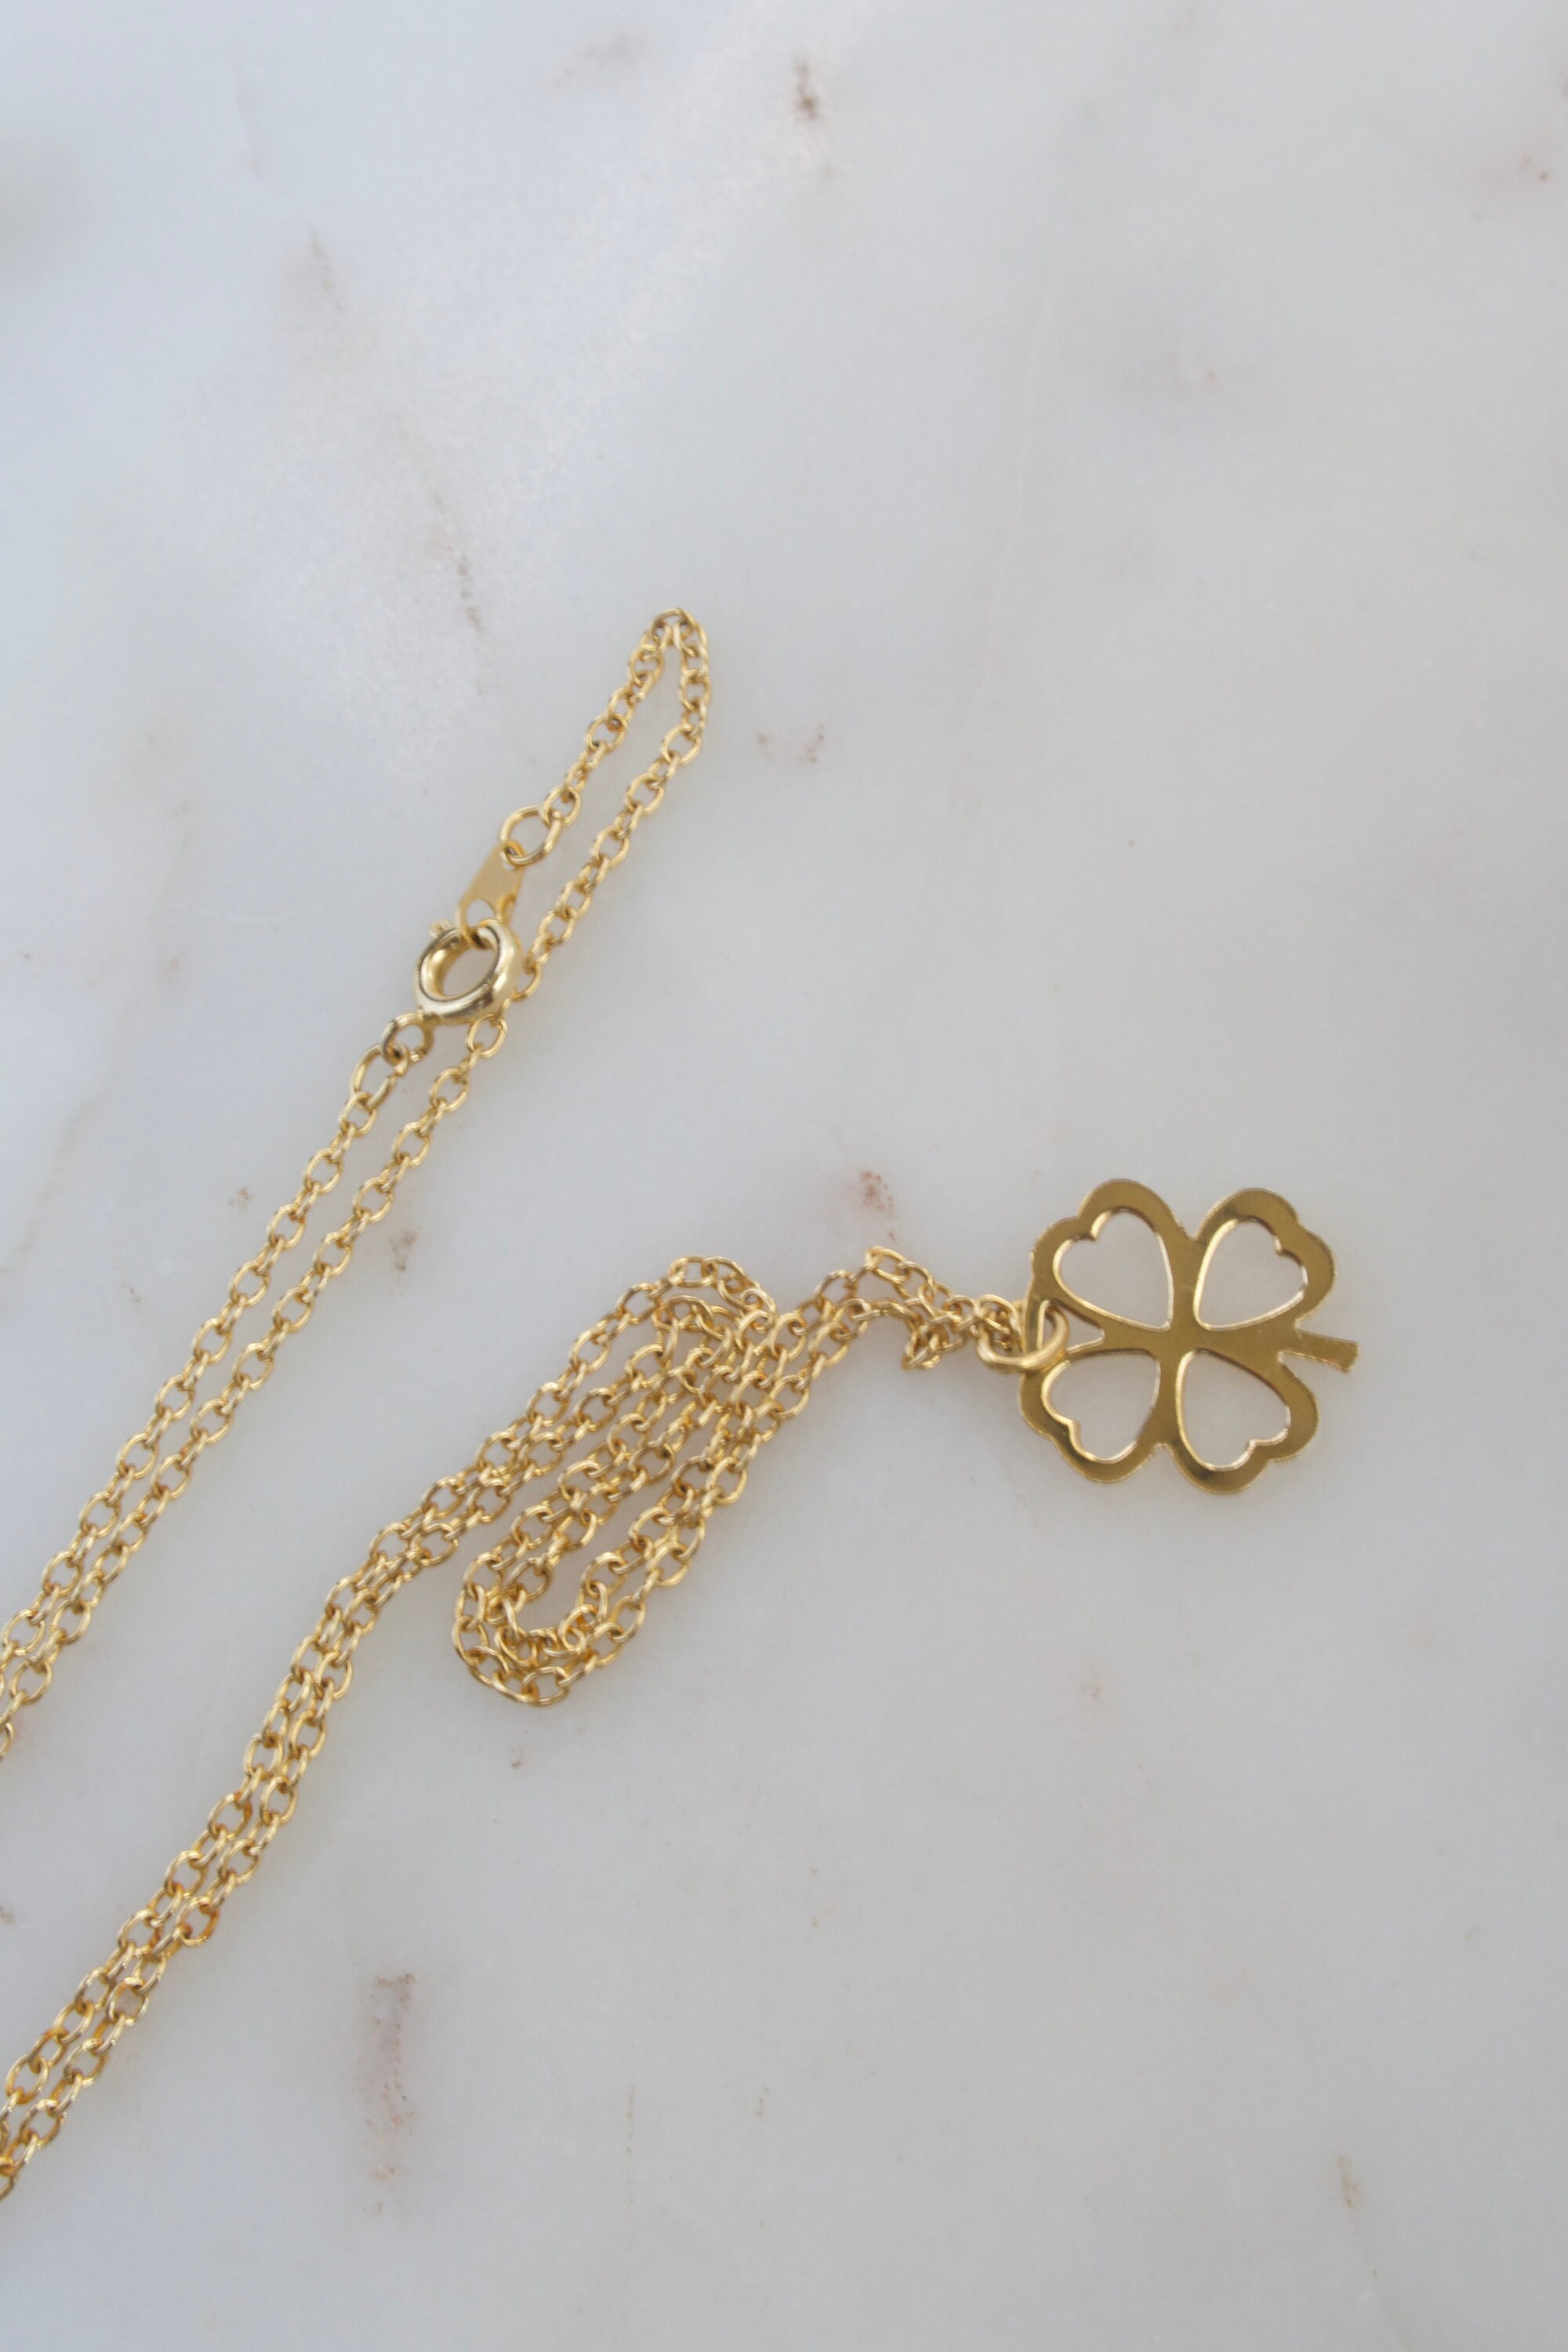 ALTERA Vintage Four Leaf Clover Pendant Jewelry Set 4Pcs Necklace